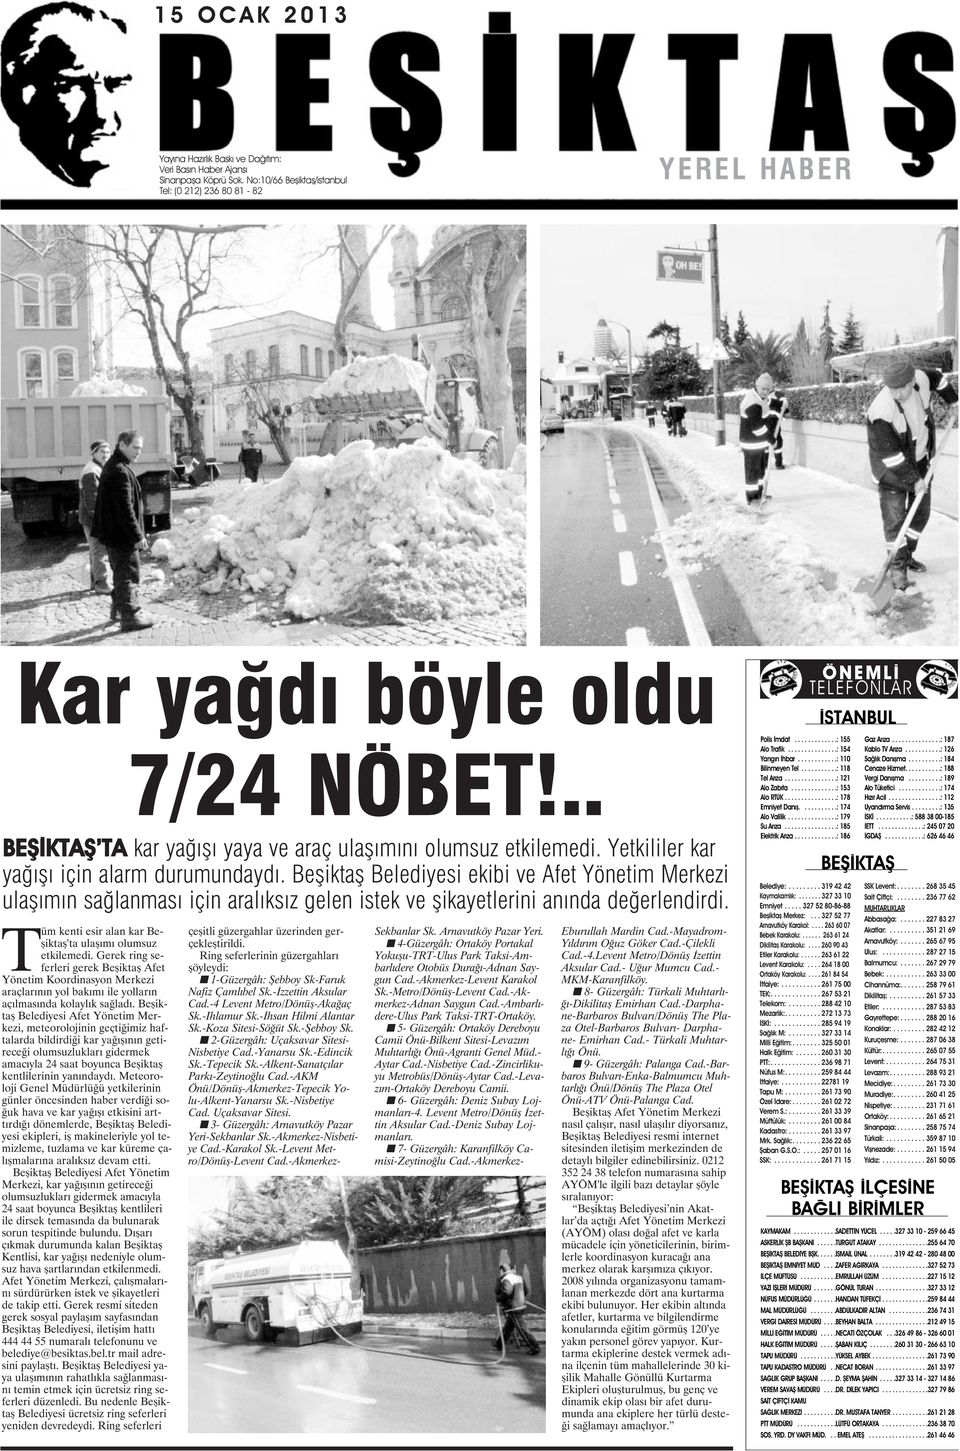 Beşiktaş Belediyesi ekibi ve Afet Yönetim Merkezi ulaşımın sağlanması için aralıksız gelen istek ve şikayetlerini anında değerlendirdi. Tüm kenti esir alan kar Beşiktaş'ta ulaşımı olumsuz etkilemedi.